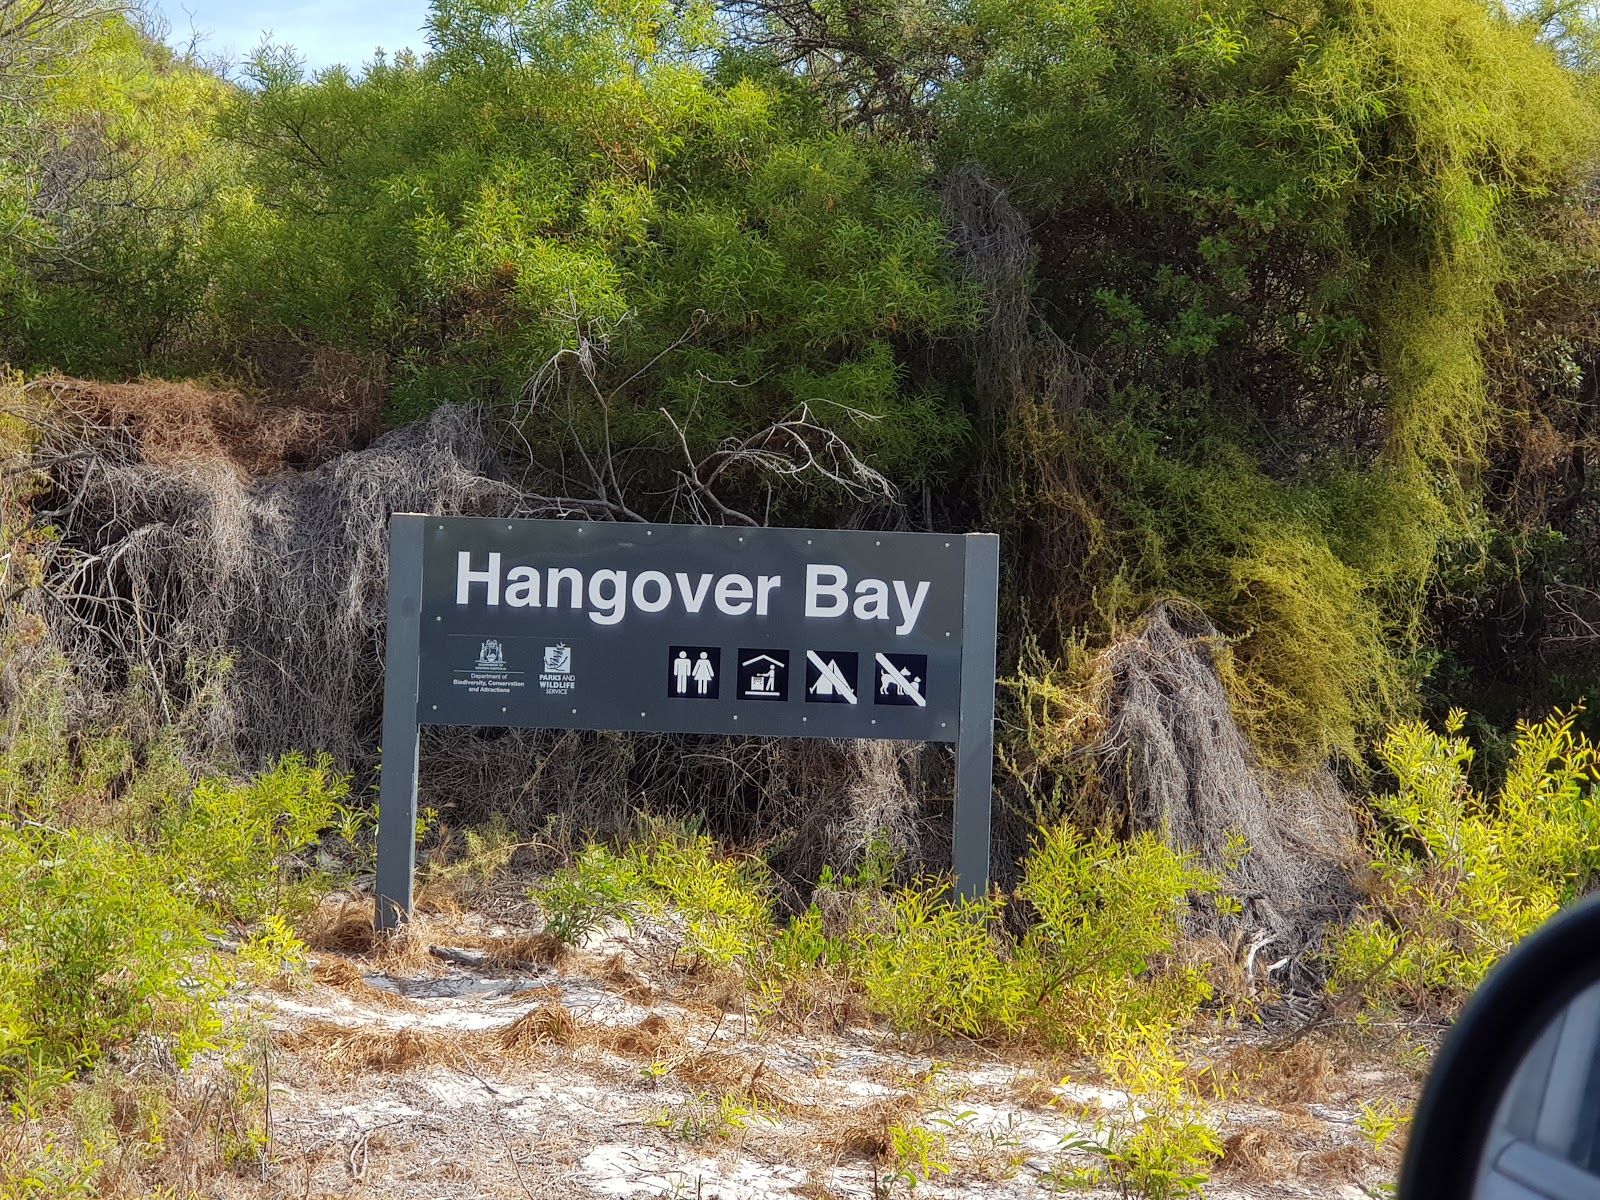 Foto di Hangover Bay Beach ubicato in zona naturale